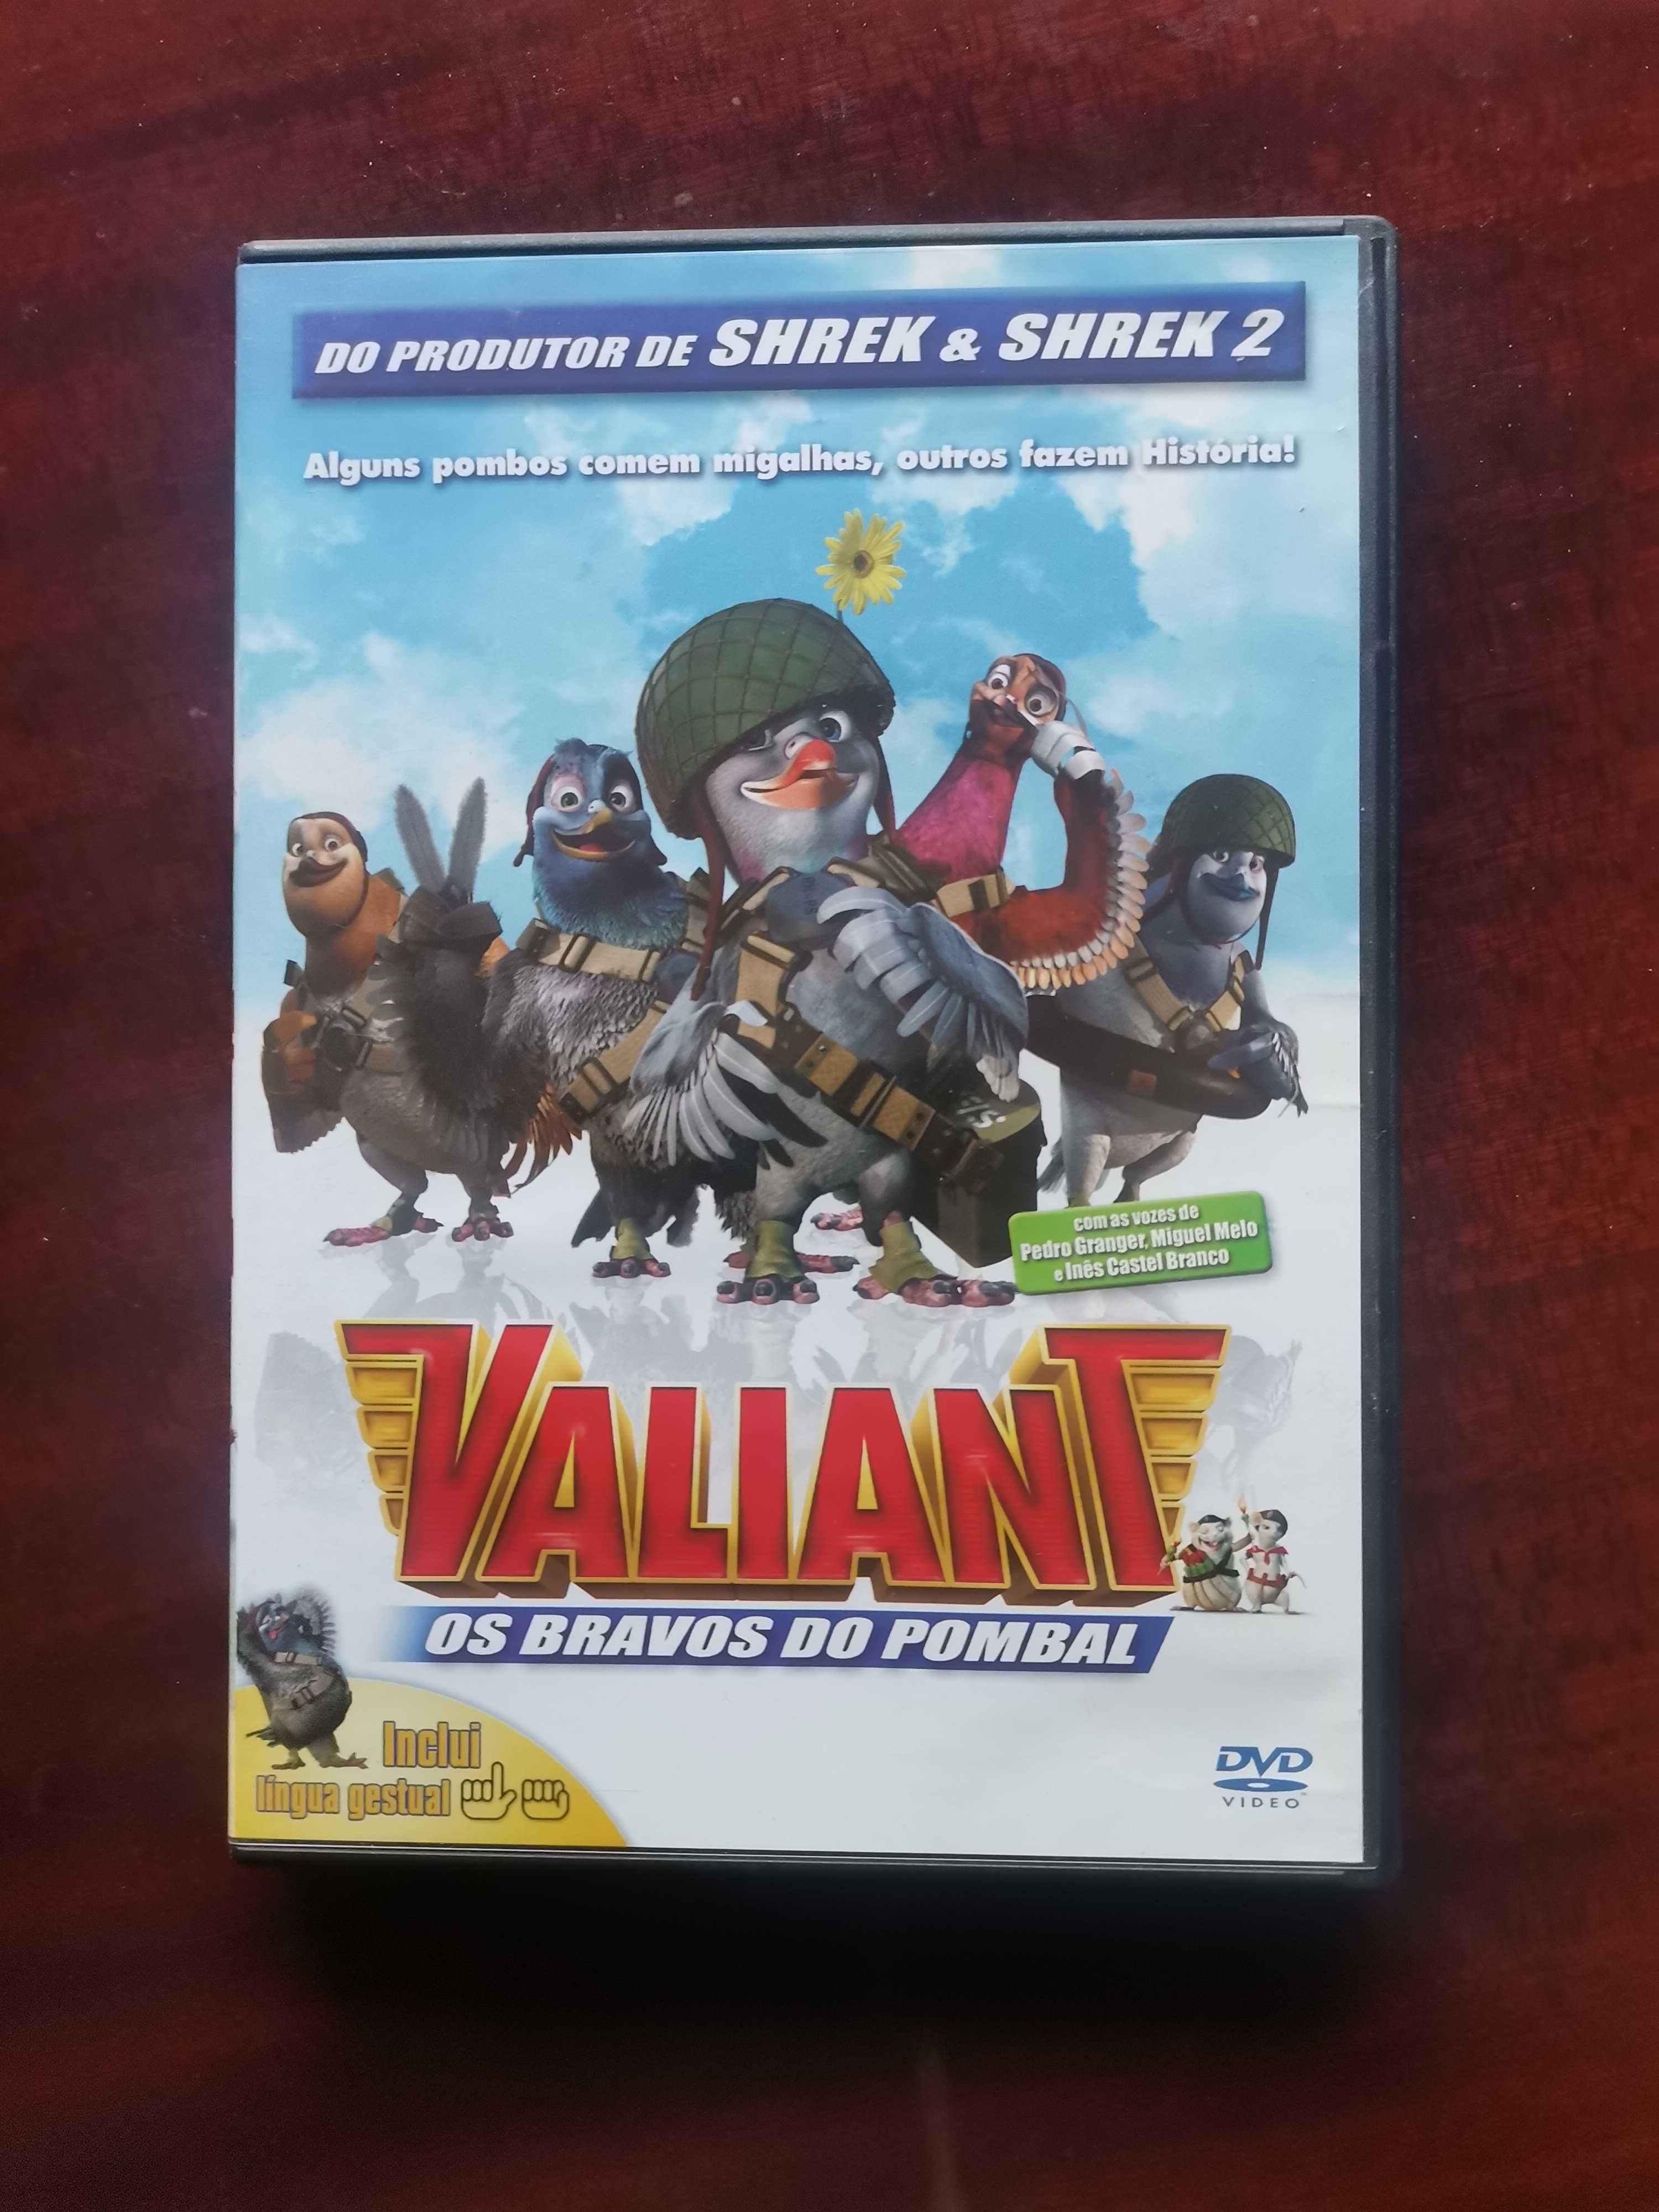 DVD " Valiant - Os Bravos do Pombal " - Inclui língua gestual